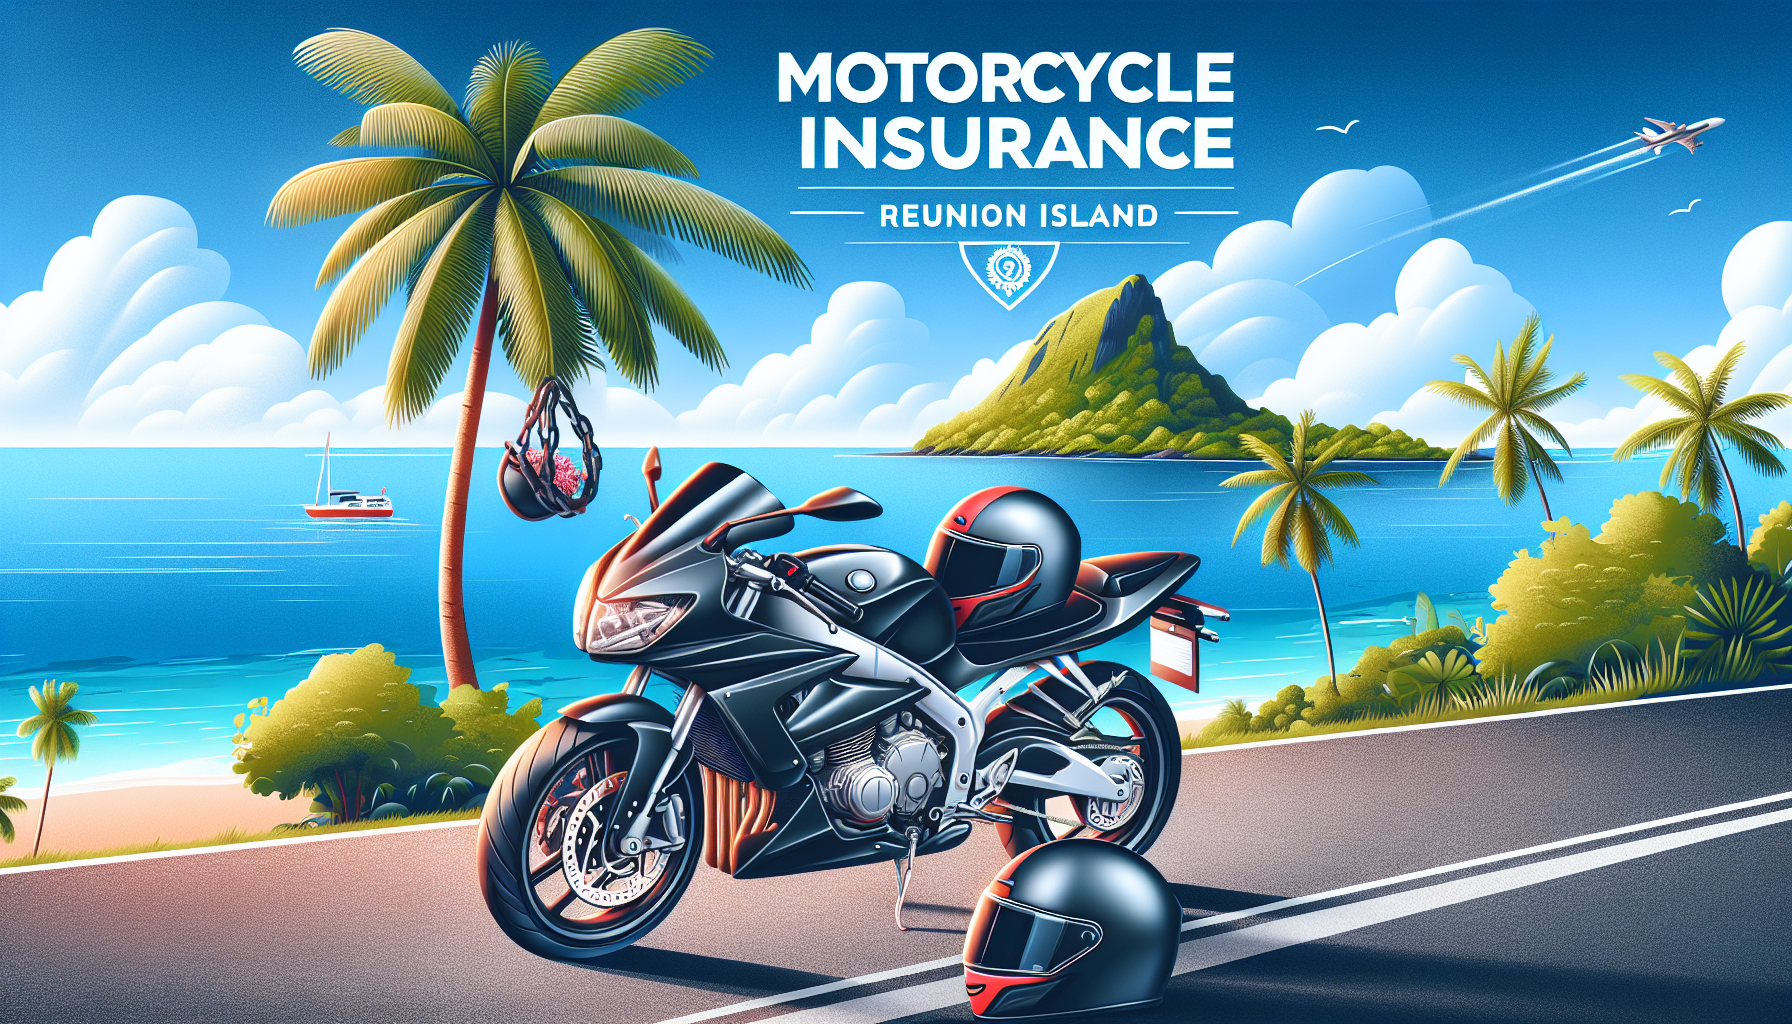 découvrez la meilleure assurance moto adaptée à vos besoins à la réunion avec notre guide complet. comparez les offres et trouvez la protection idéale pour votre moto.